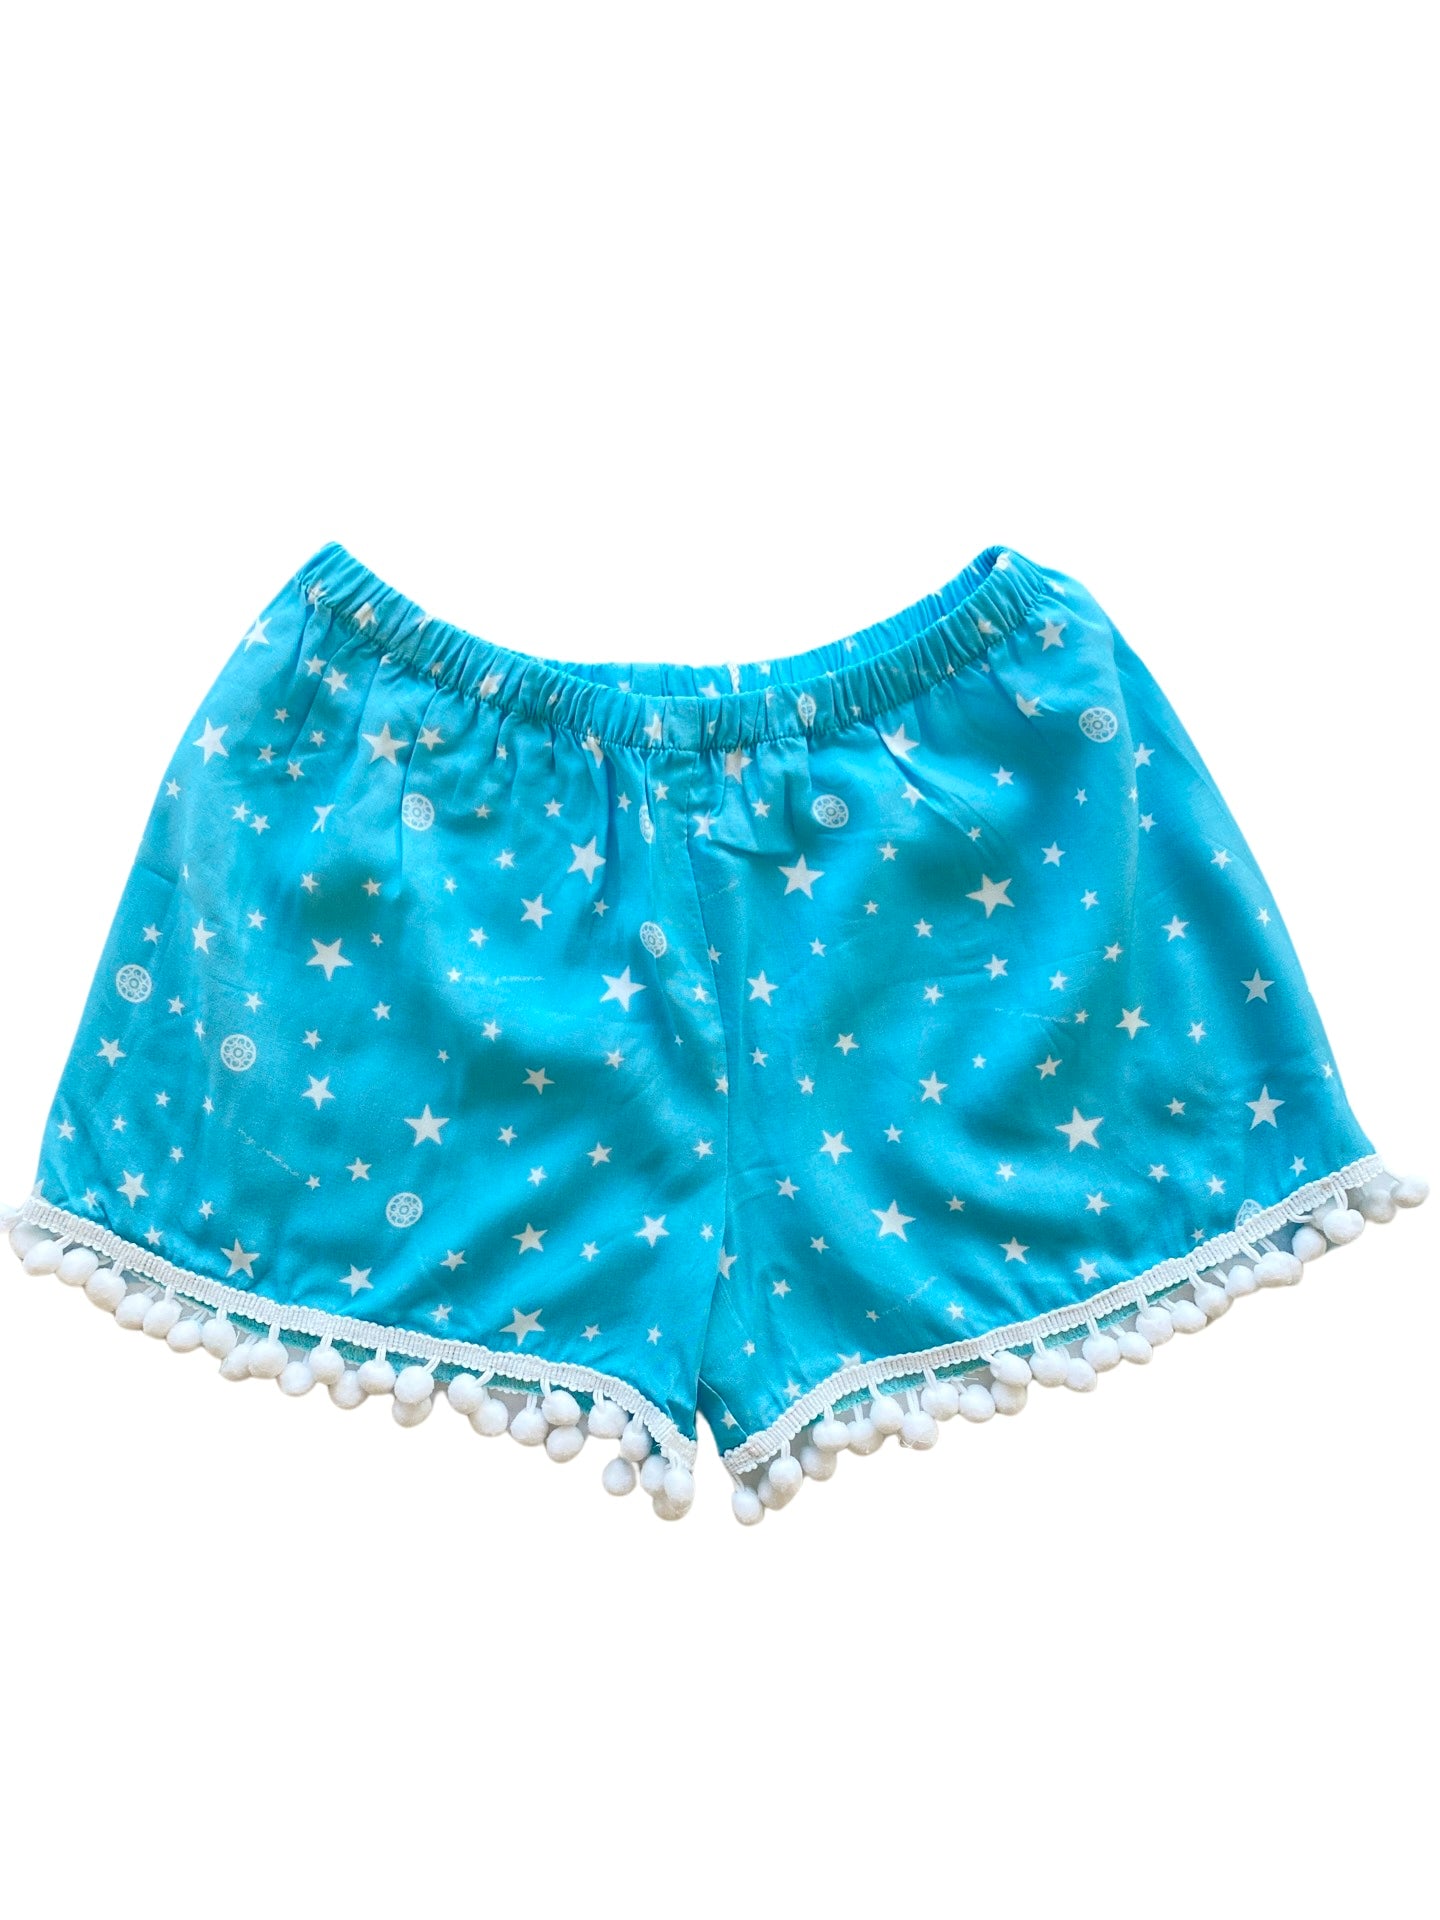 Mini Shorts in Blue Star print